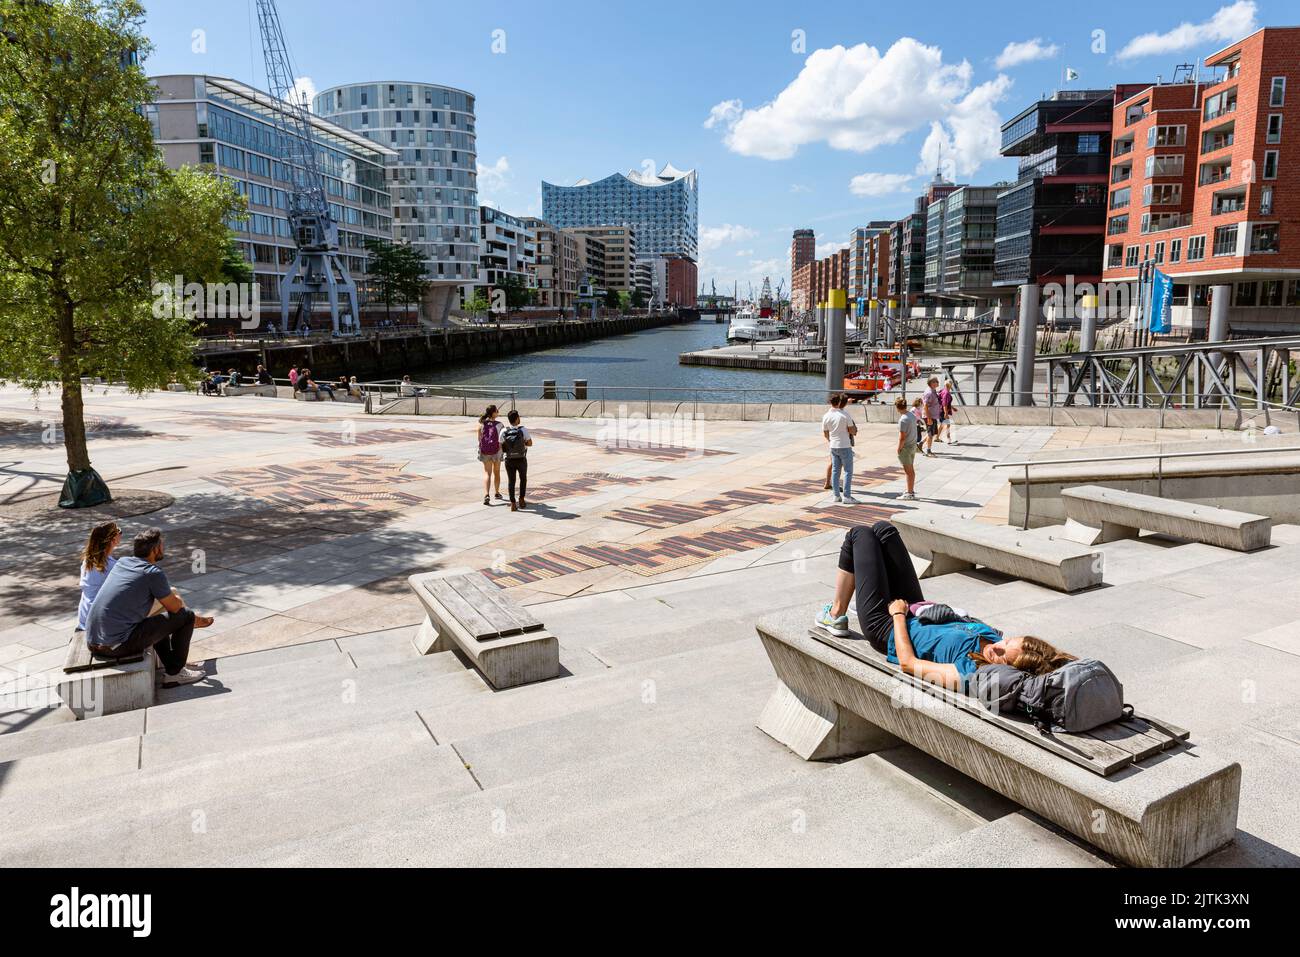 La gente se sienta en las terrazas Magellan bajo el sol del verano y contemple la Elbphilharmonie y la Hafencity de Hamburgo, Hamburgo, Alemania Foto de stock